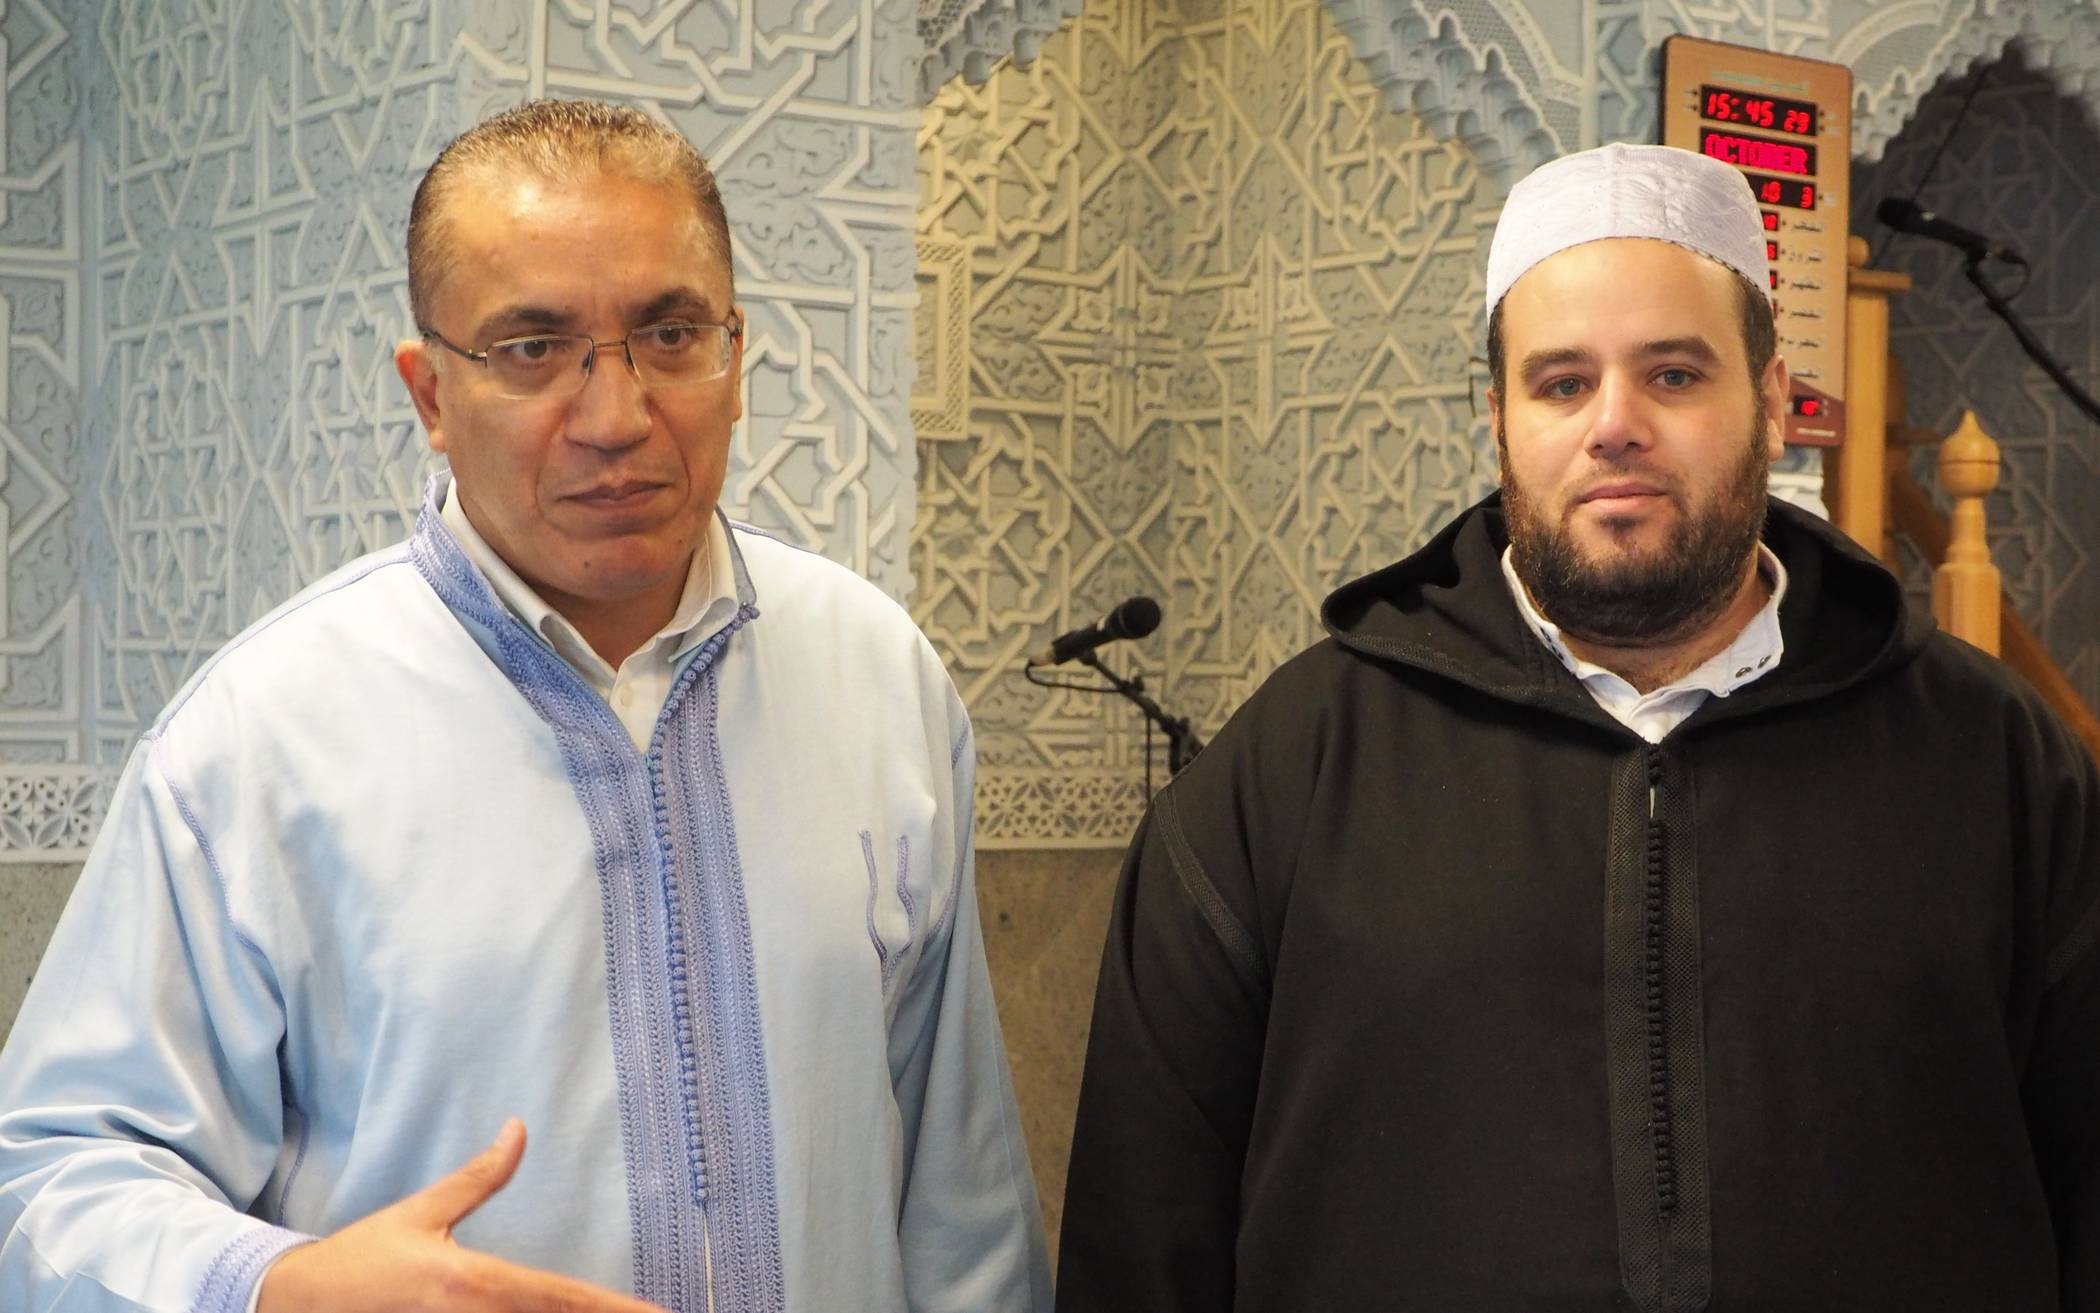  Jaaouane Mohamed (rechts im Bild neben Mohammed Assila) ist 32 Jahre alt und Imam der Assalam Moschee in Hochdahl. Er besucht Deutschkurse, weil er sich selbst mit allen verständigen möchte. 